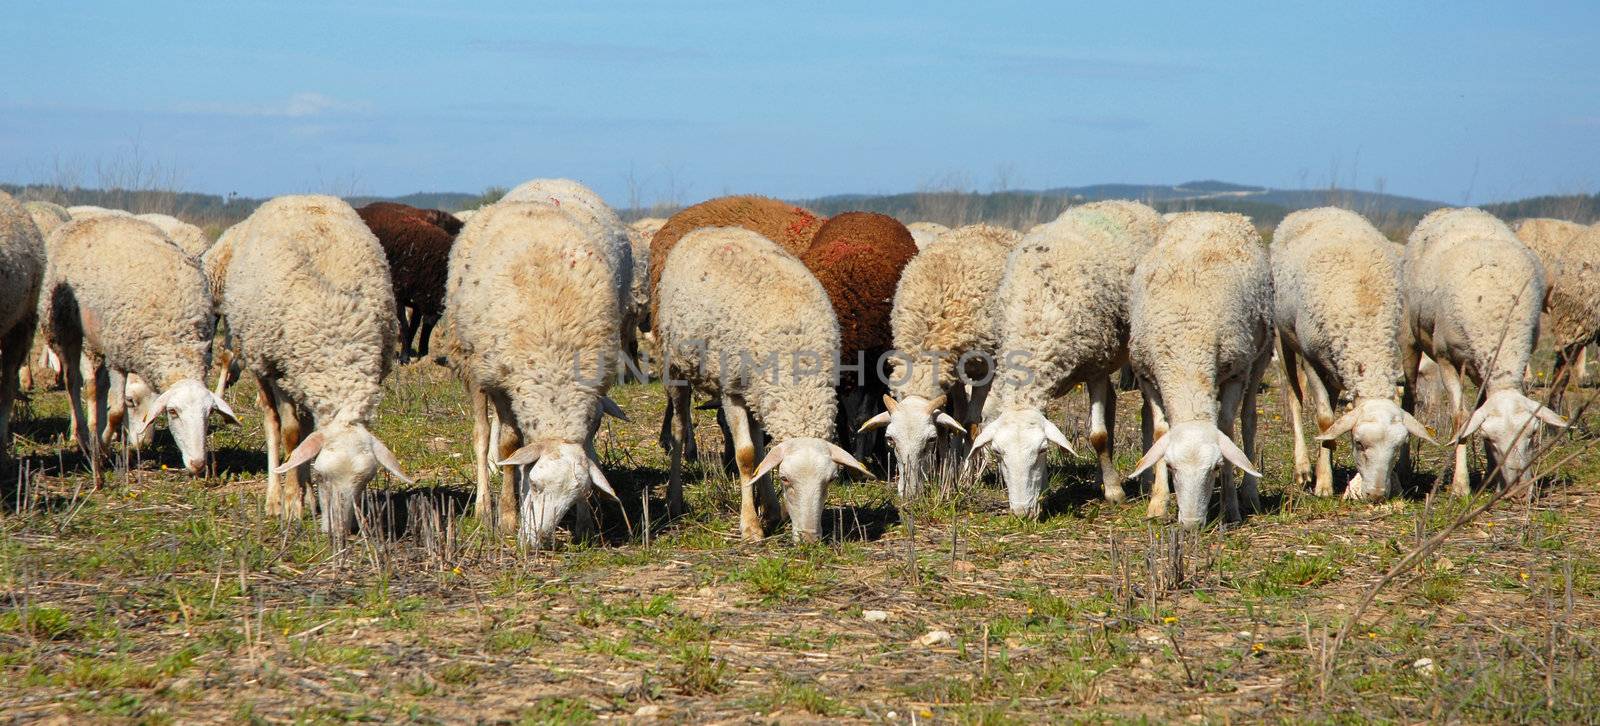 a herd of sheeps grazing in a field